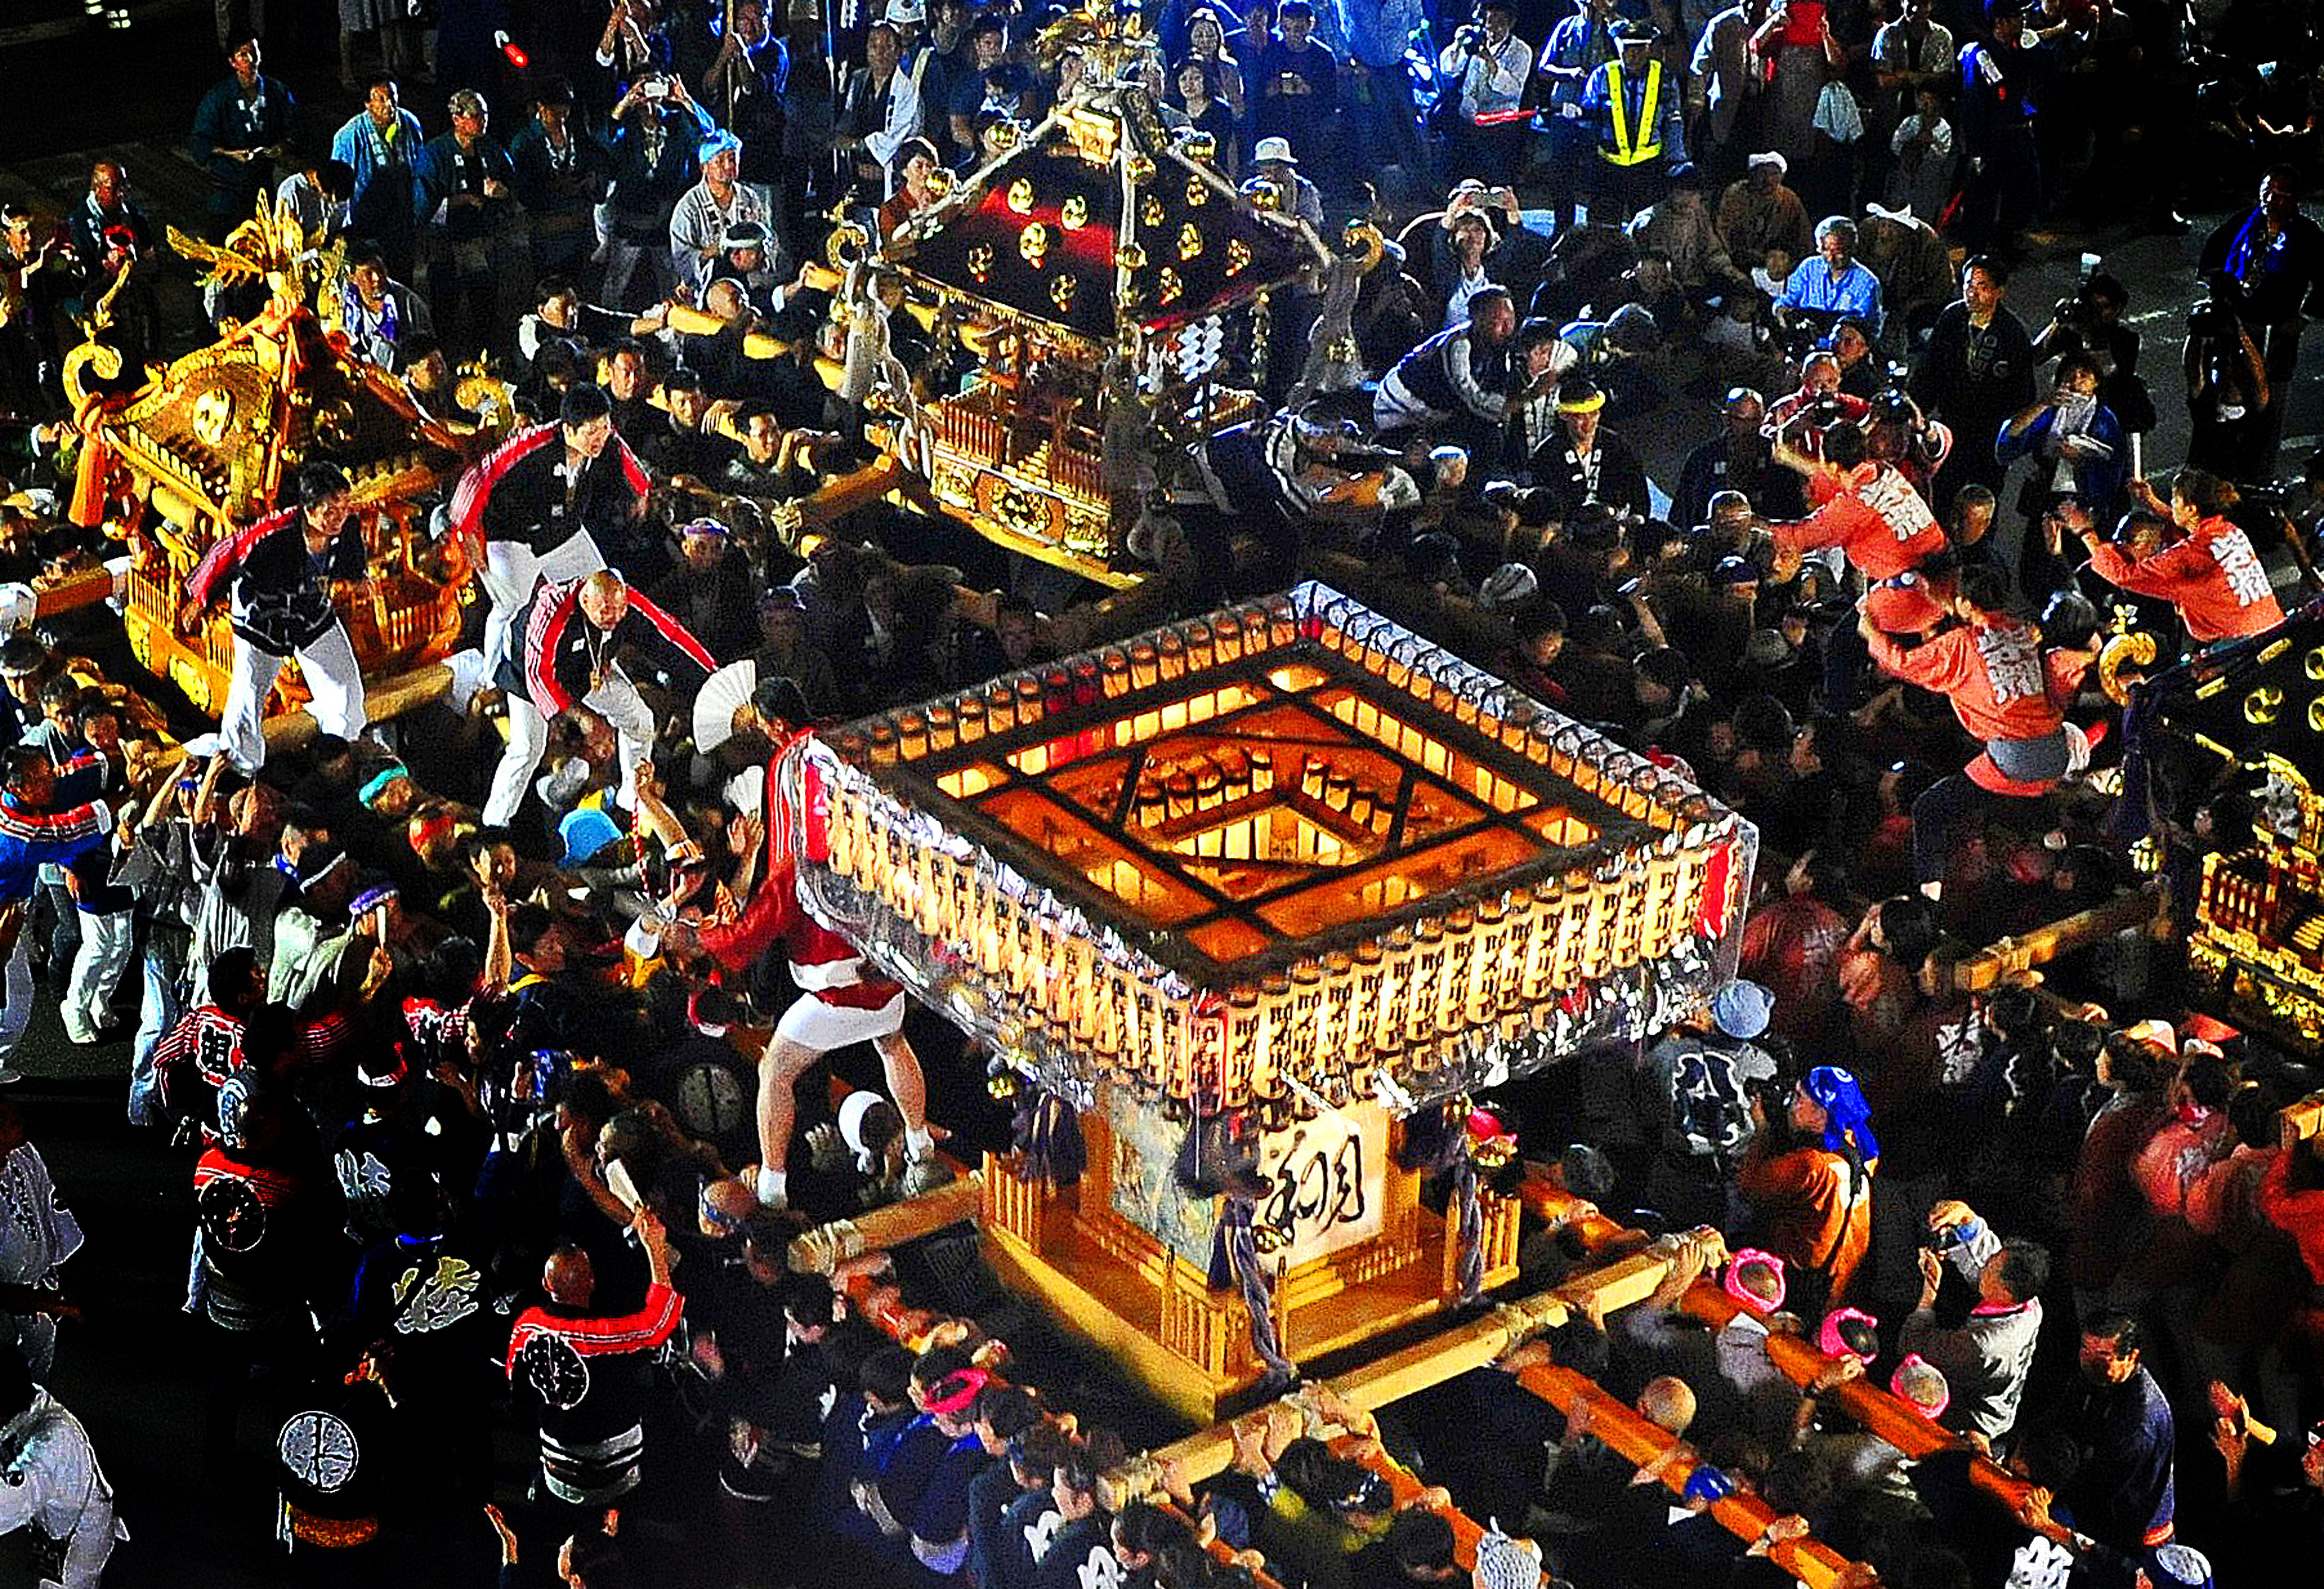 寒河江まつり 神輿の祭典 日本一さくらんぼの里さがえ さがえ観光ガイド 寒河江市観光物産協会